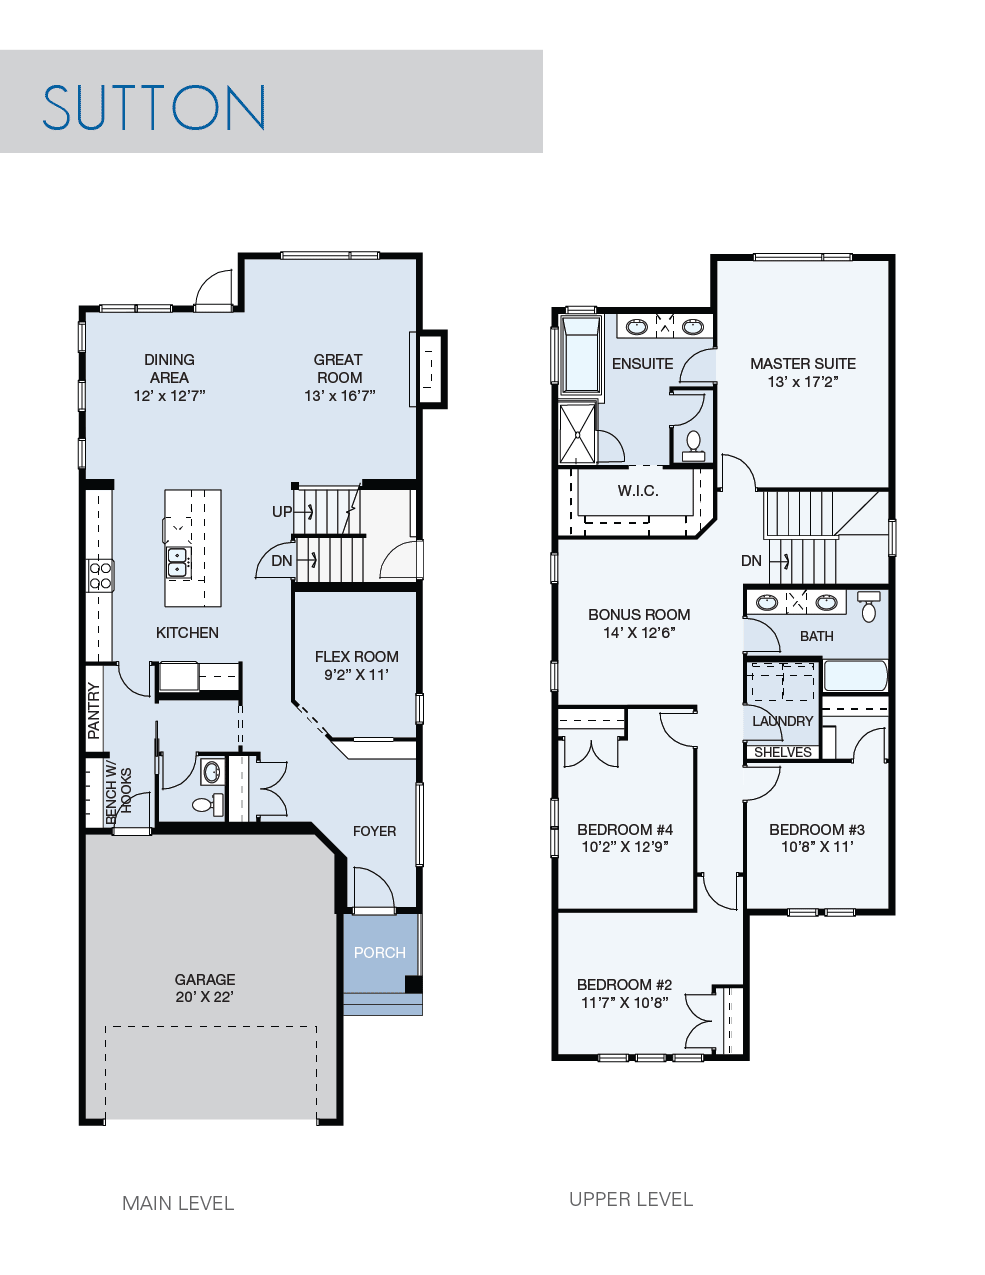 Sutton floorplan